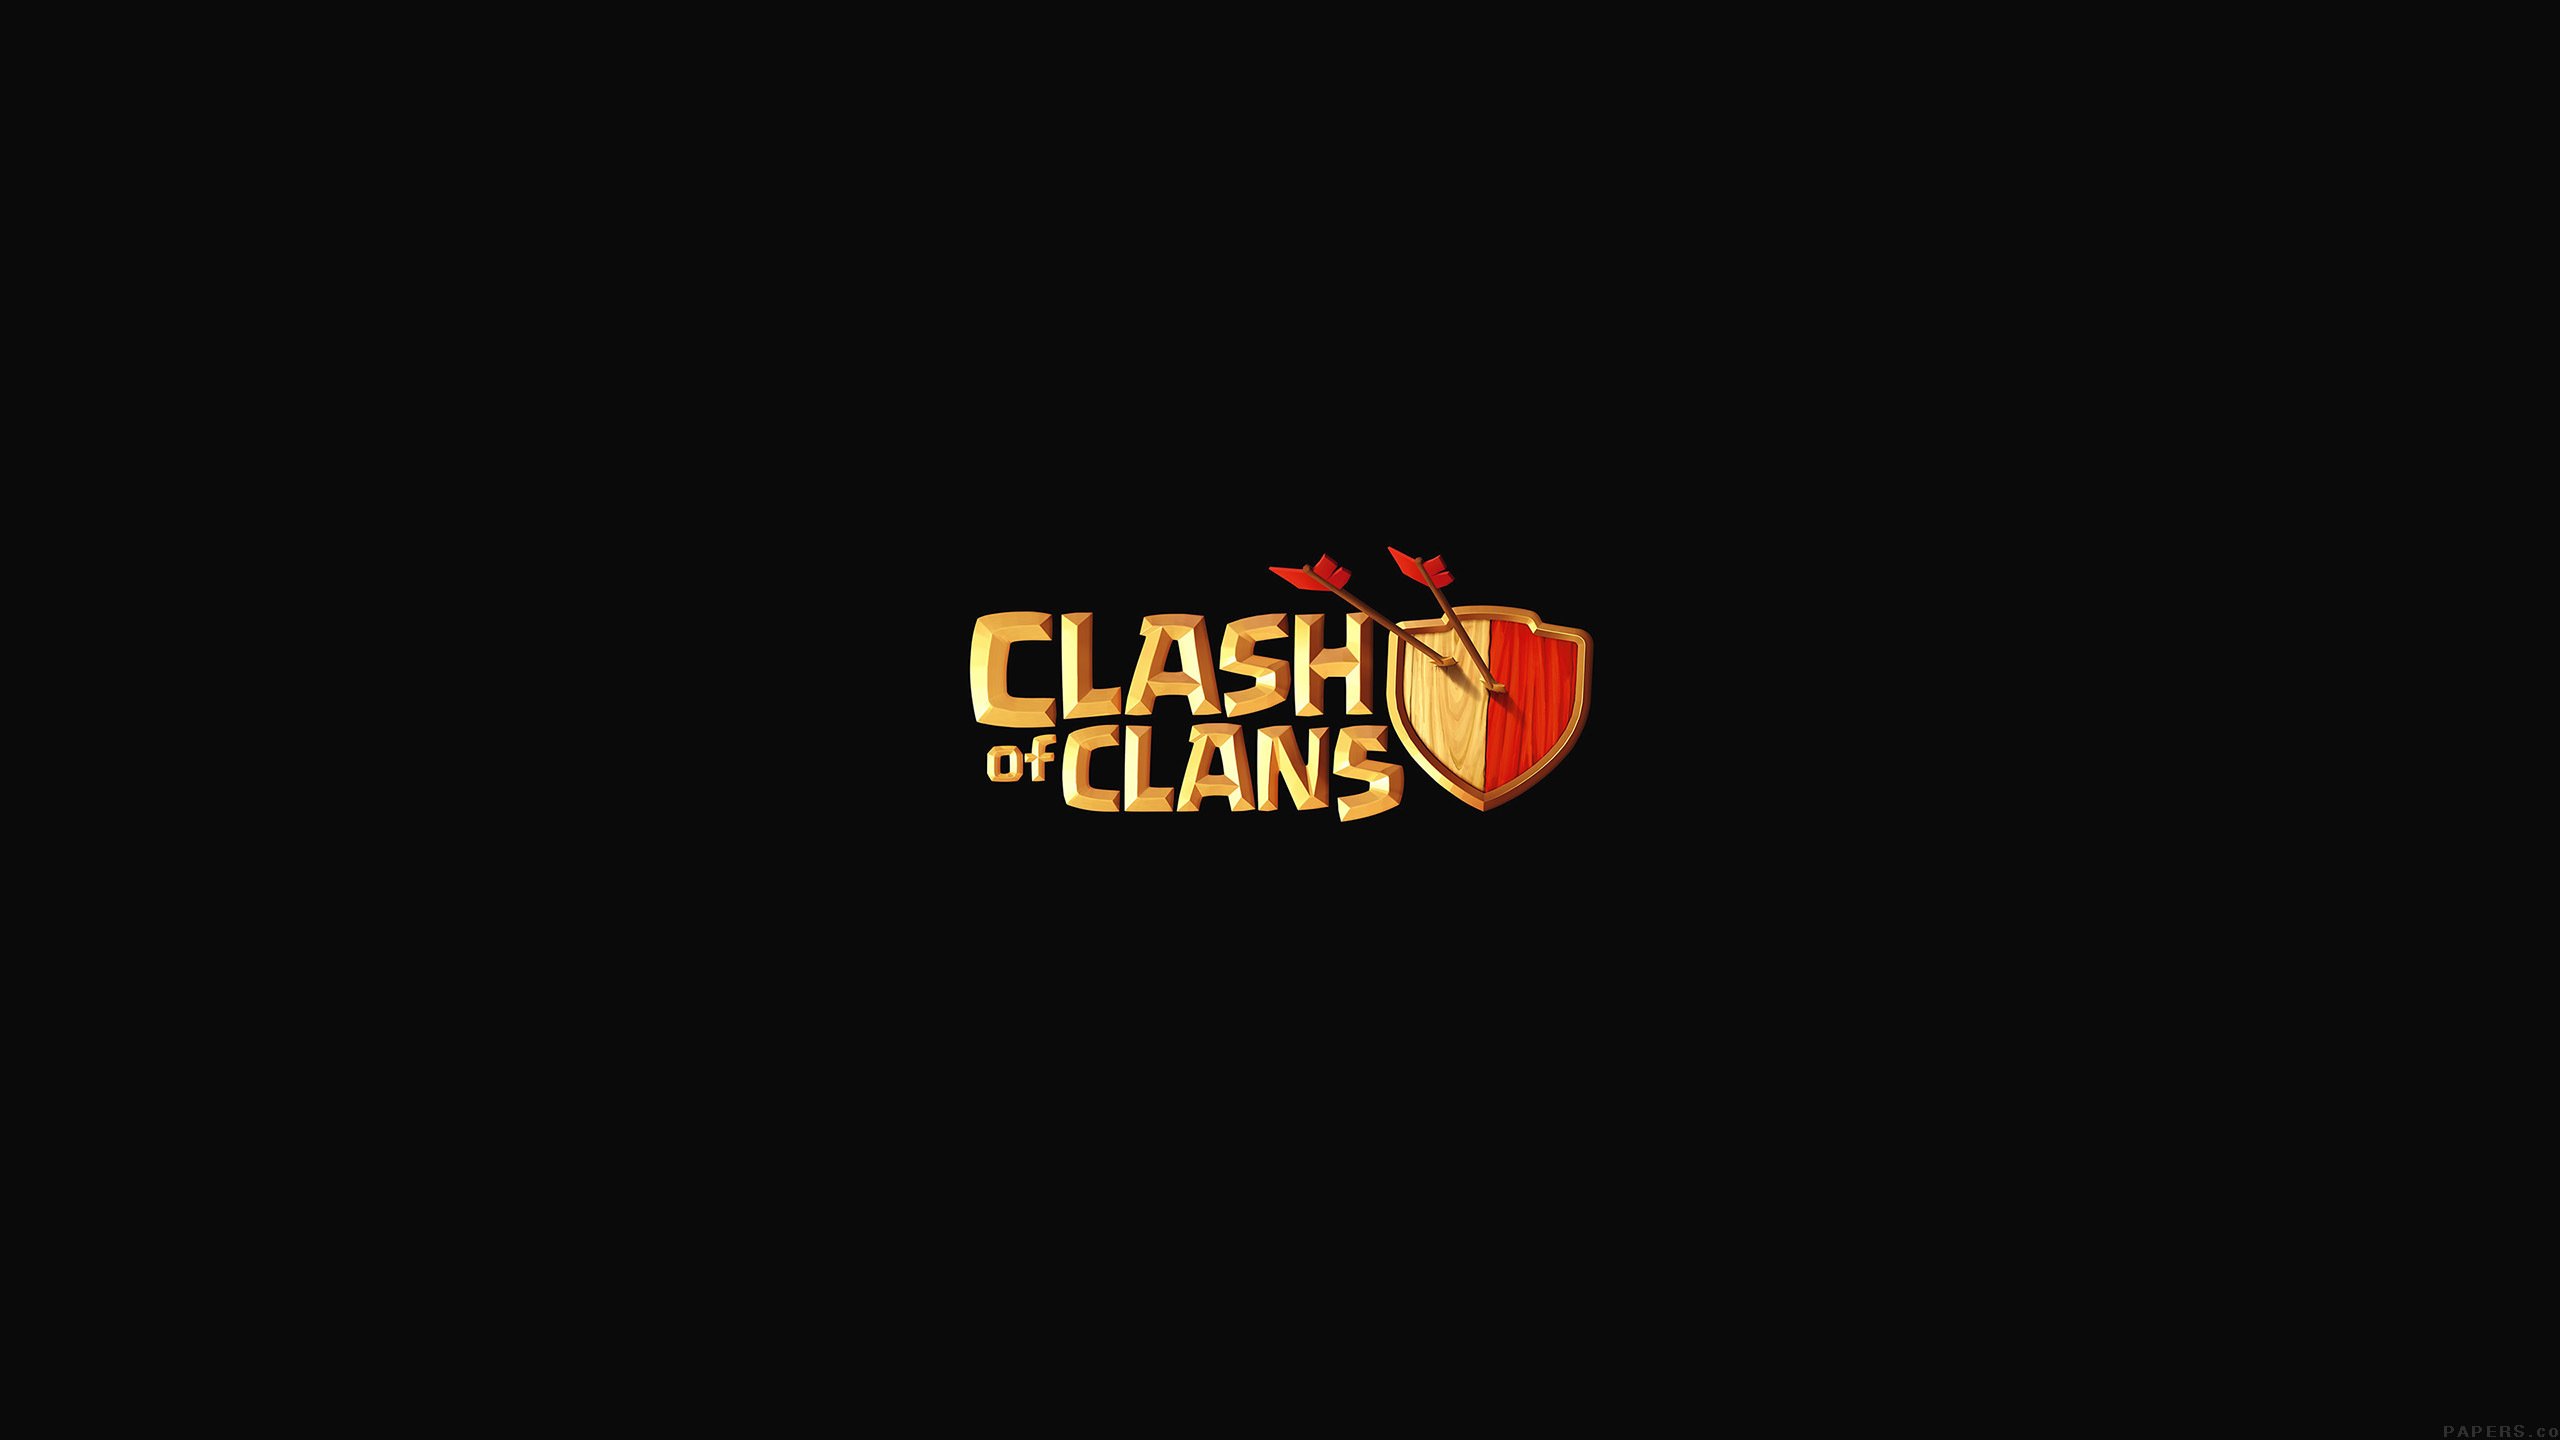 92+] Clash Of Clans Wallpapers - WallpaperSafari